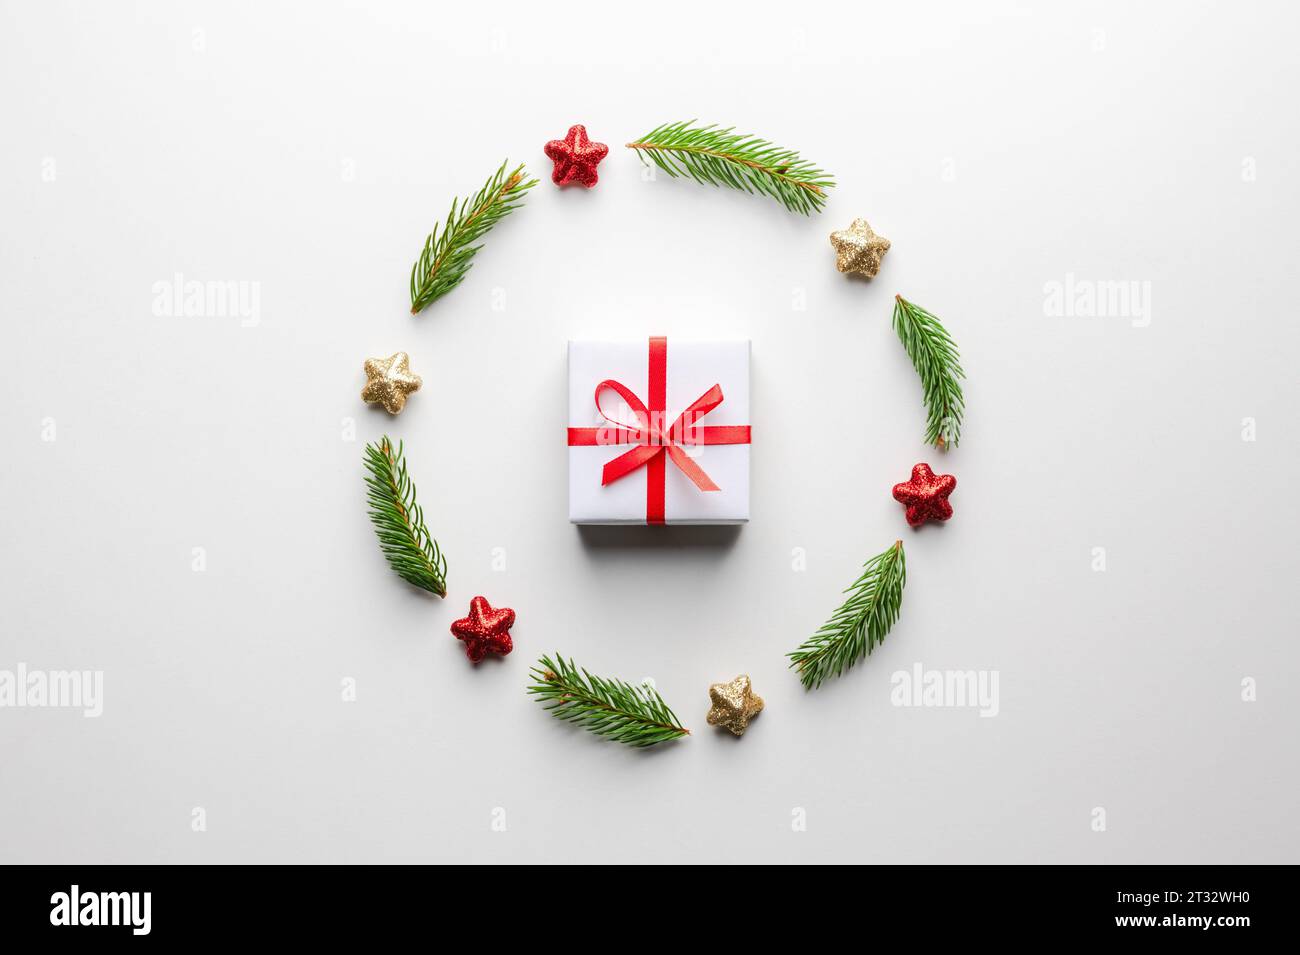 Fond créatif de Noël avec boîte cadeau de Noël avec ruban rouge, boules, brindilles de pin et décorations d'étoiles dorées sur fond blanc. Pose à plat, vue de dessus, espace de copie Banque D'Images